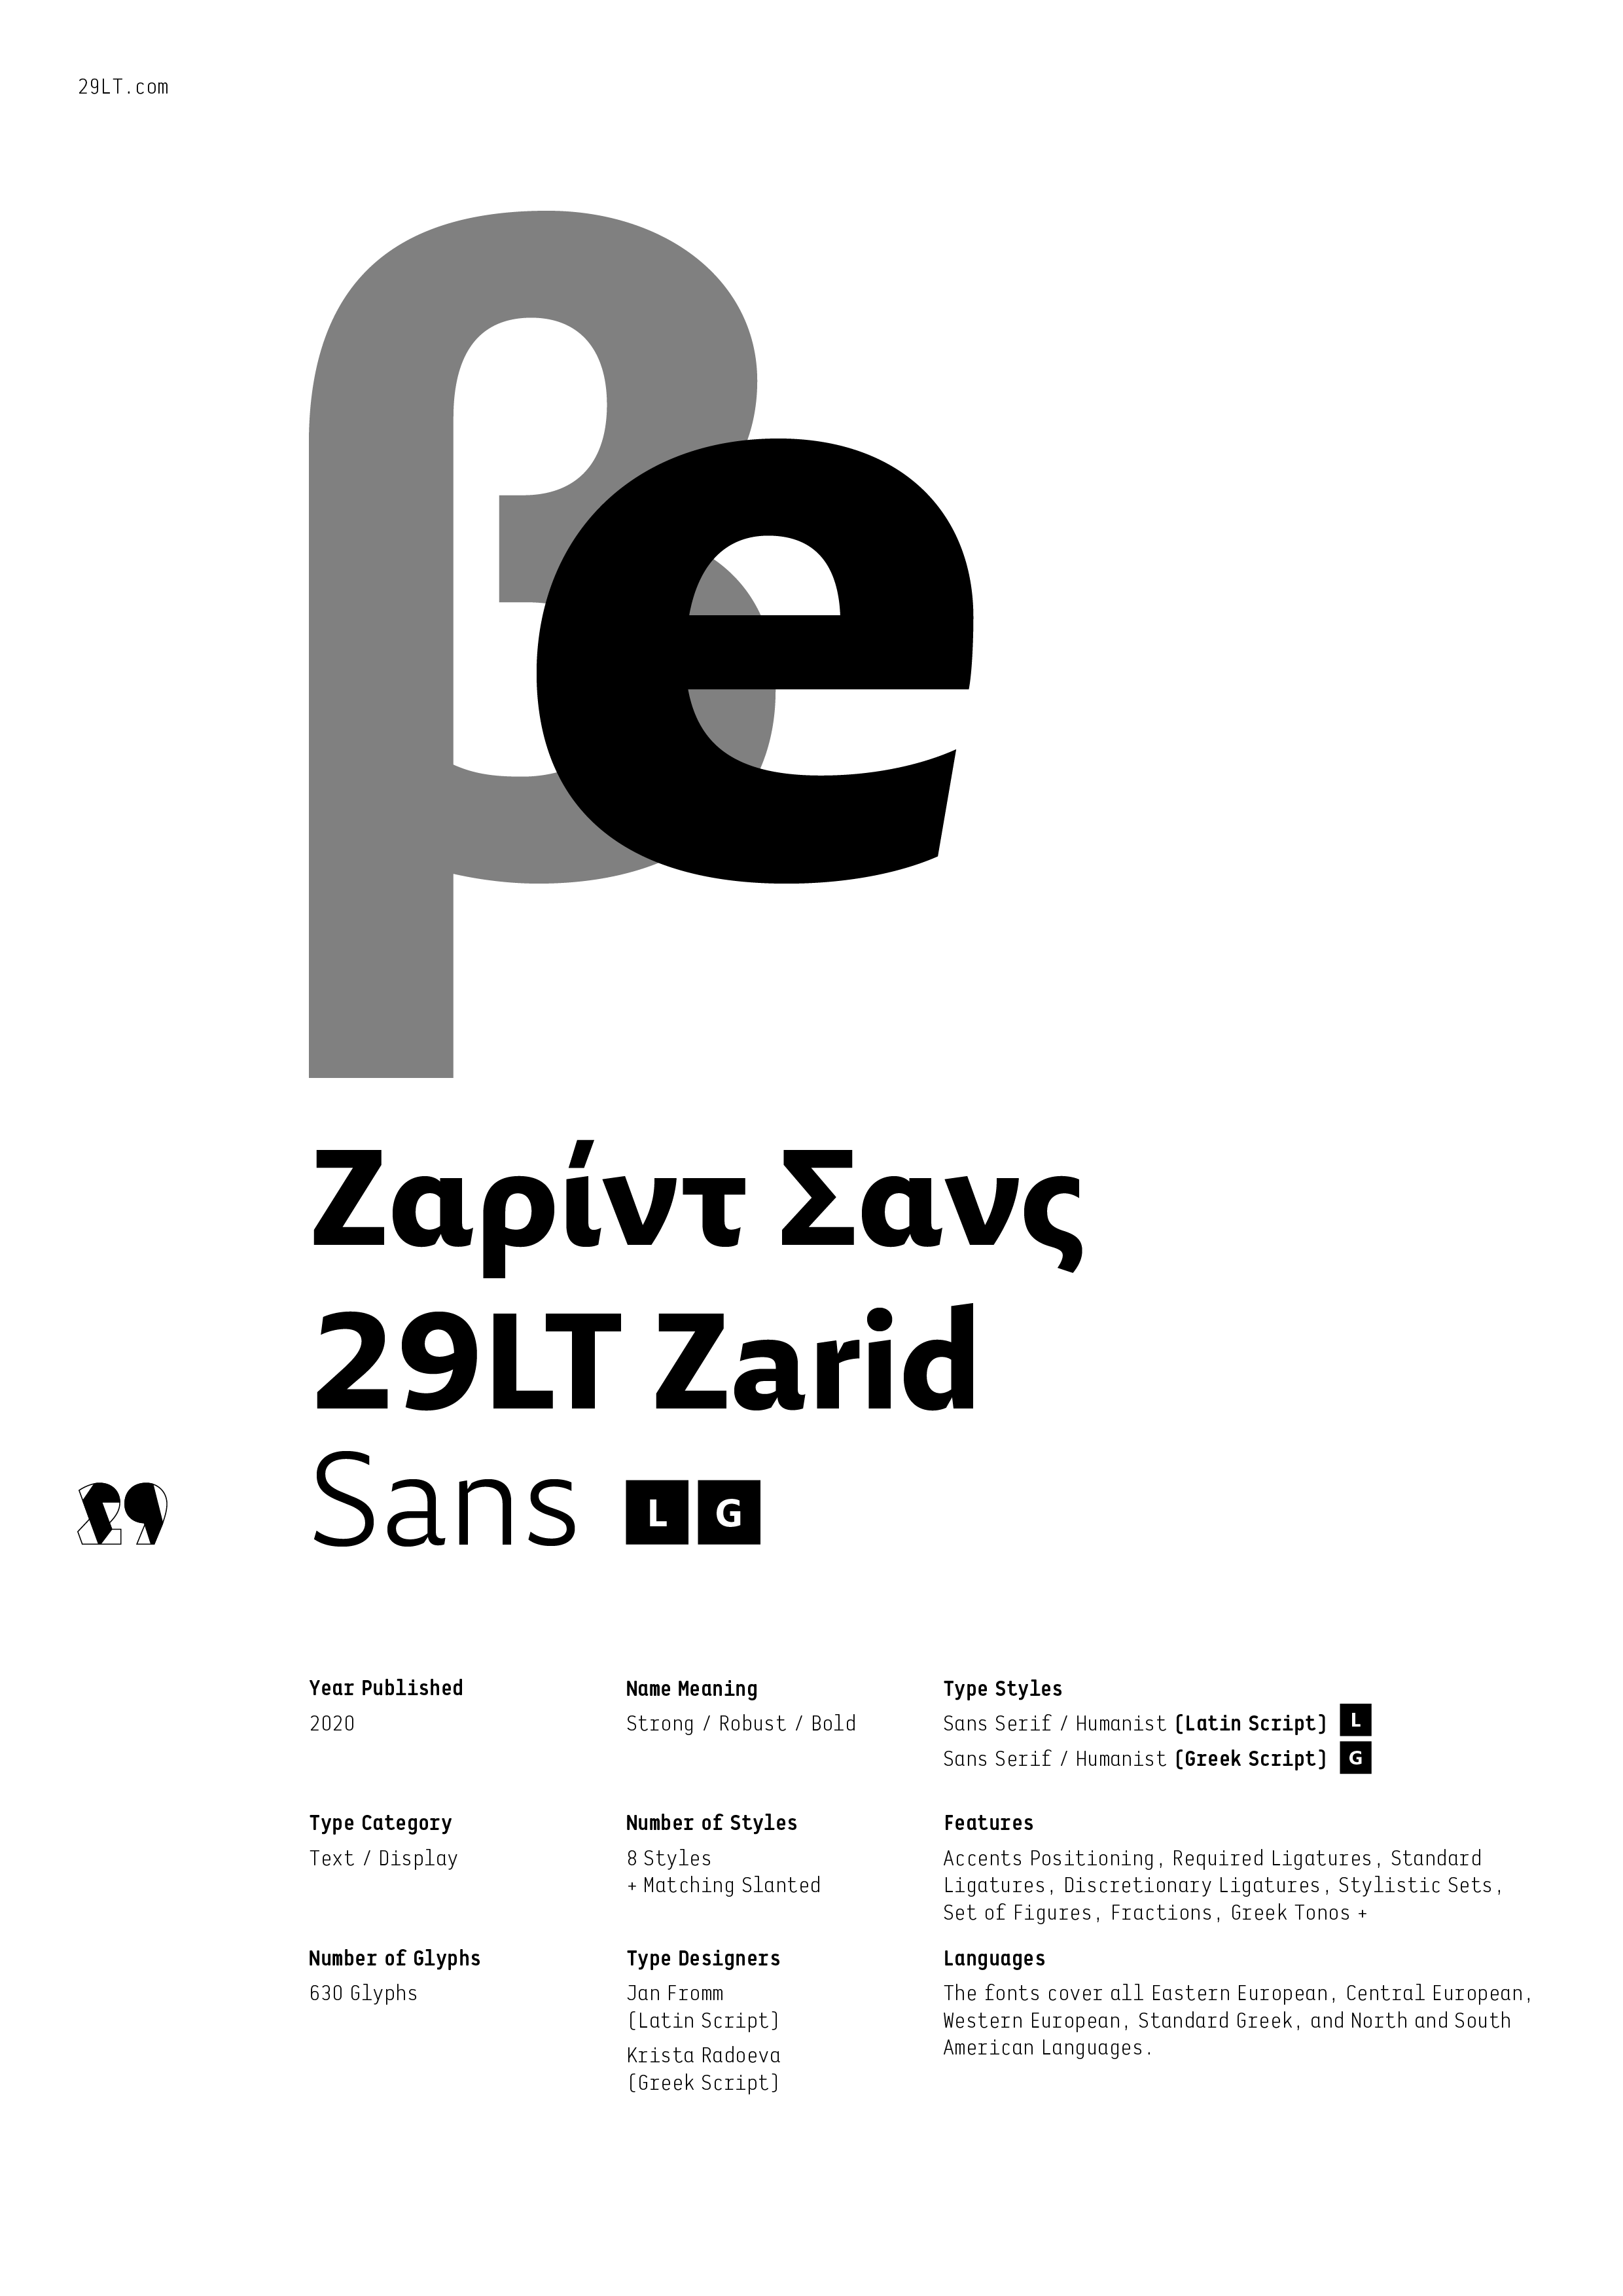 29LT Zarid Sans LG-PDF1